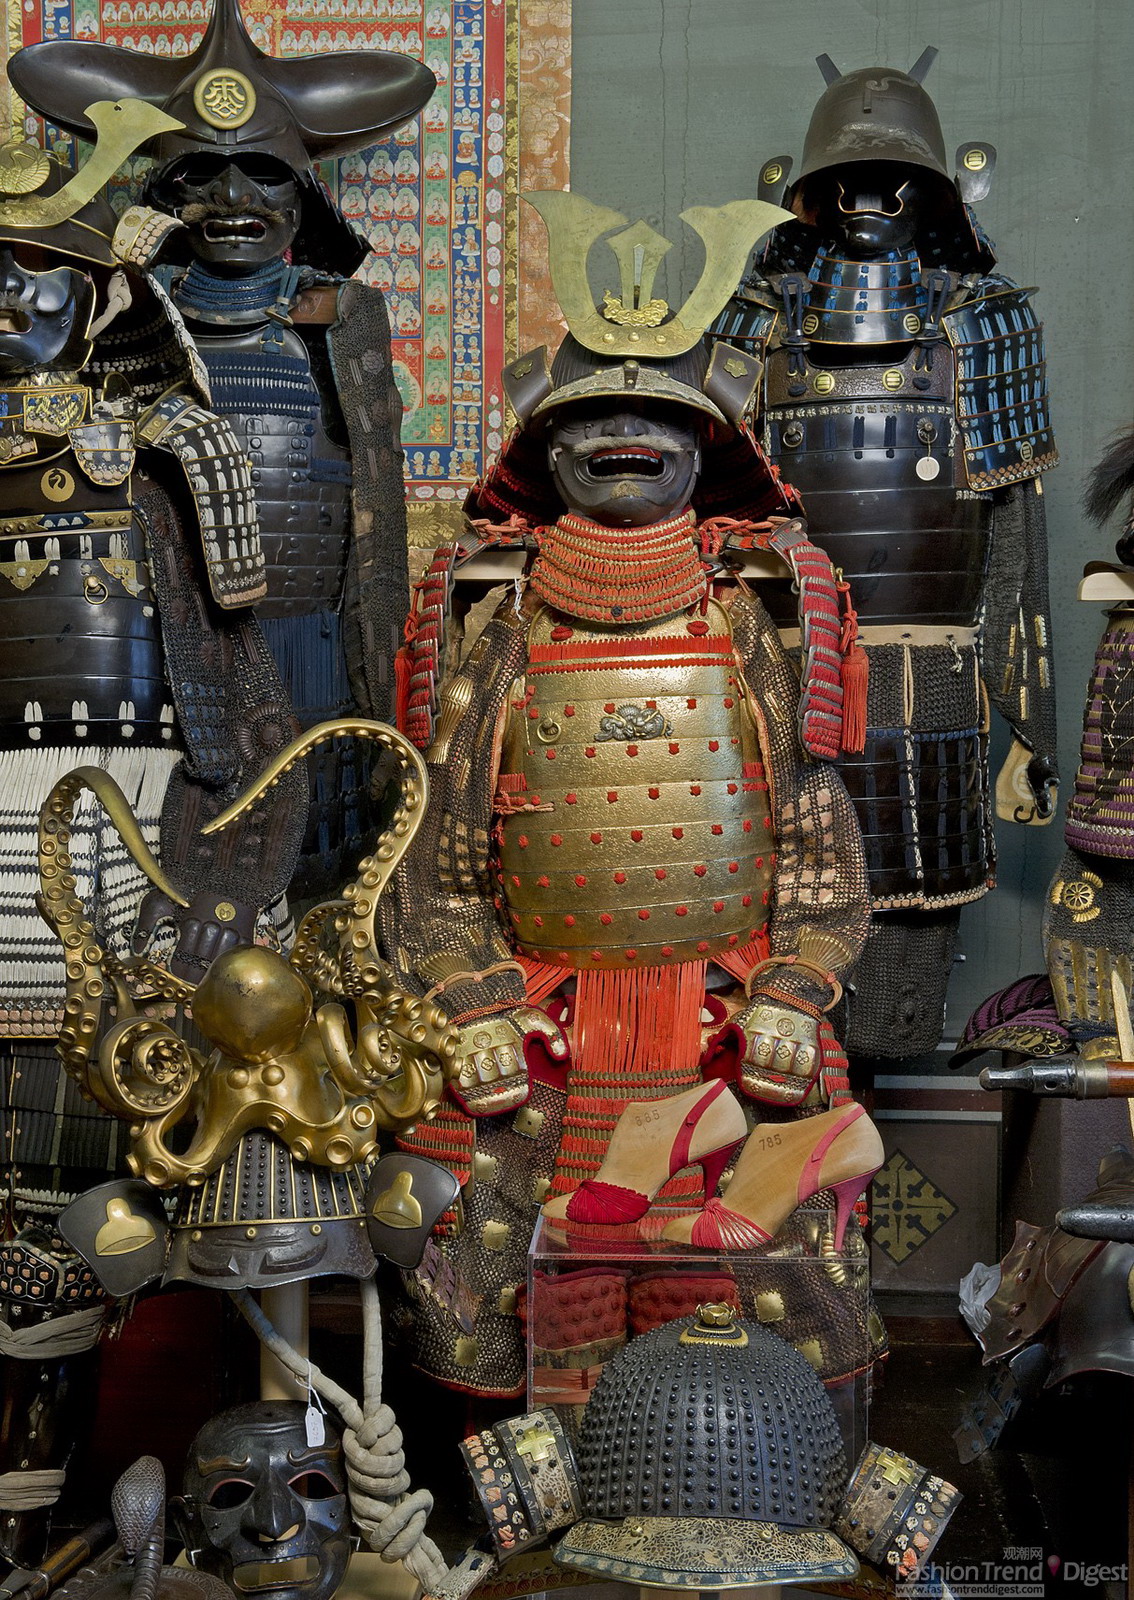 7.日本制造，日式盔甲，Akaito odoshi nimai-do tosei gusoku（赤糸威大铠，当世具足），16世纪中后期；护胸甲为稍后时期；其余部分来自日本江户时代。细川家族的高级武士盔甲，其特征是红色丝绸系带。头盔上有 Myochin Fusamune 的签名。佛罗伦萨，斯蒂伯博物馆。<br>
Salvatore Ferragamo，Marika，1957年。红色丝绸和罗缎制作，是凉鞋的原型。佛罗伦萨，Salvatore Ferragamo博物馆。<br>
Salvatore Ferragamo，Sapo，1956-1957年。由粉色丝绸、玻璃纸和罗缎制作，是凉鞋的原型。佛罗伦萨，Salvatore Ferragamo博物馆。<br>
 